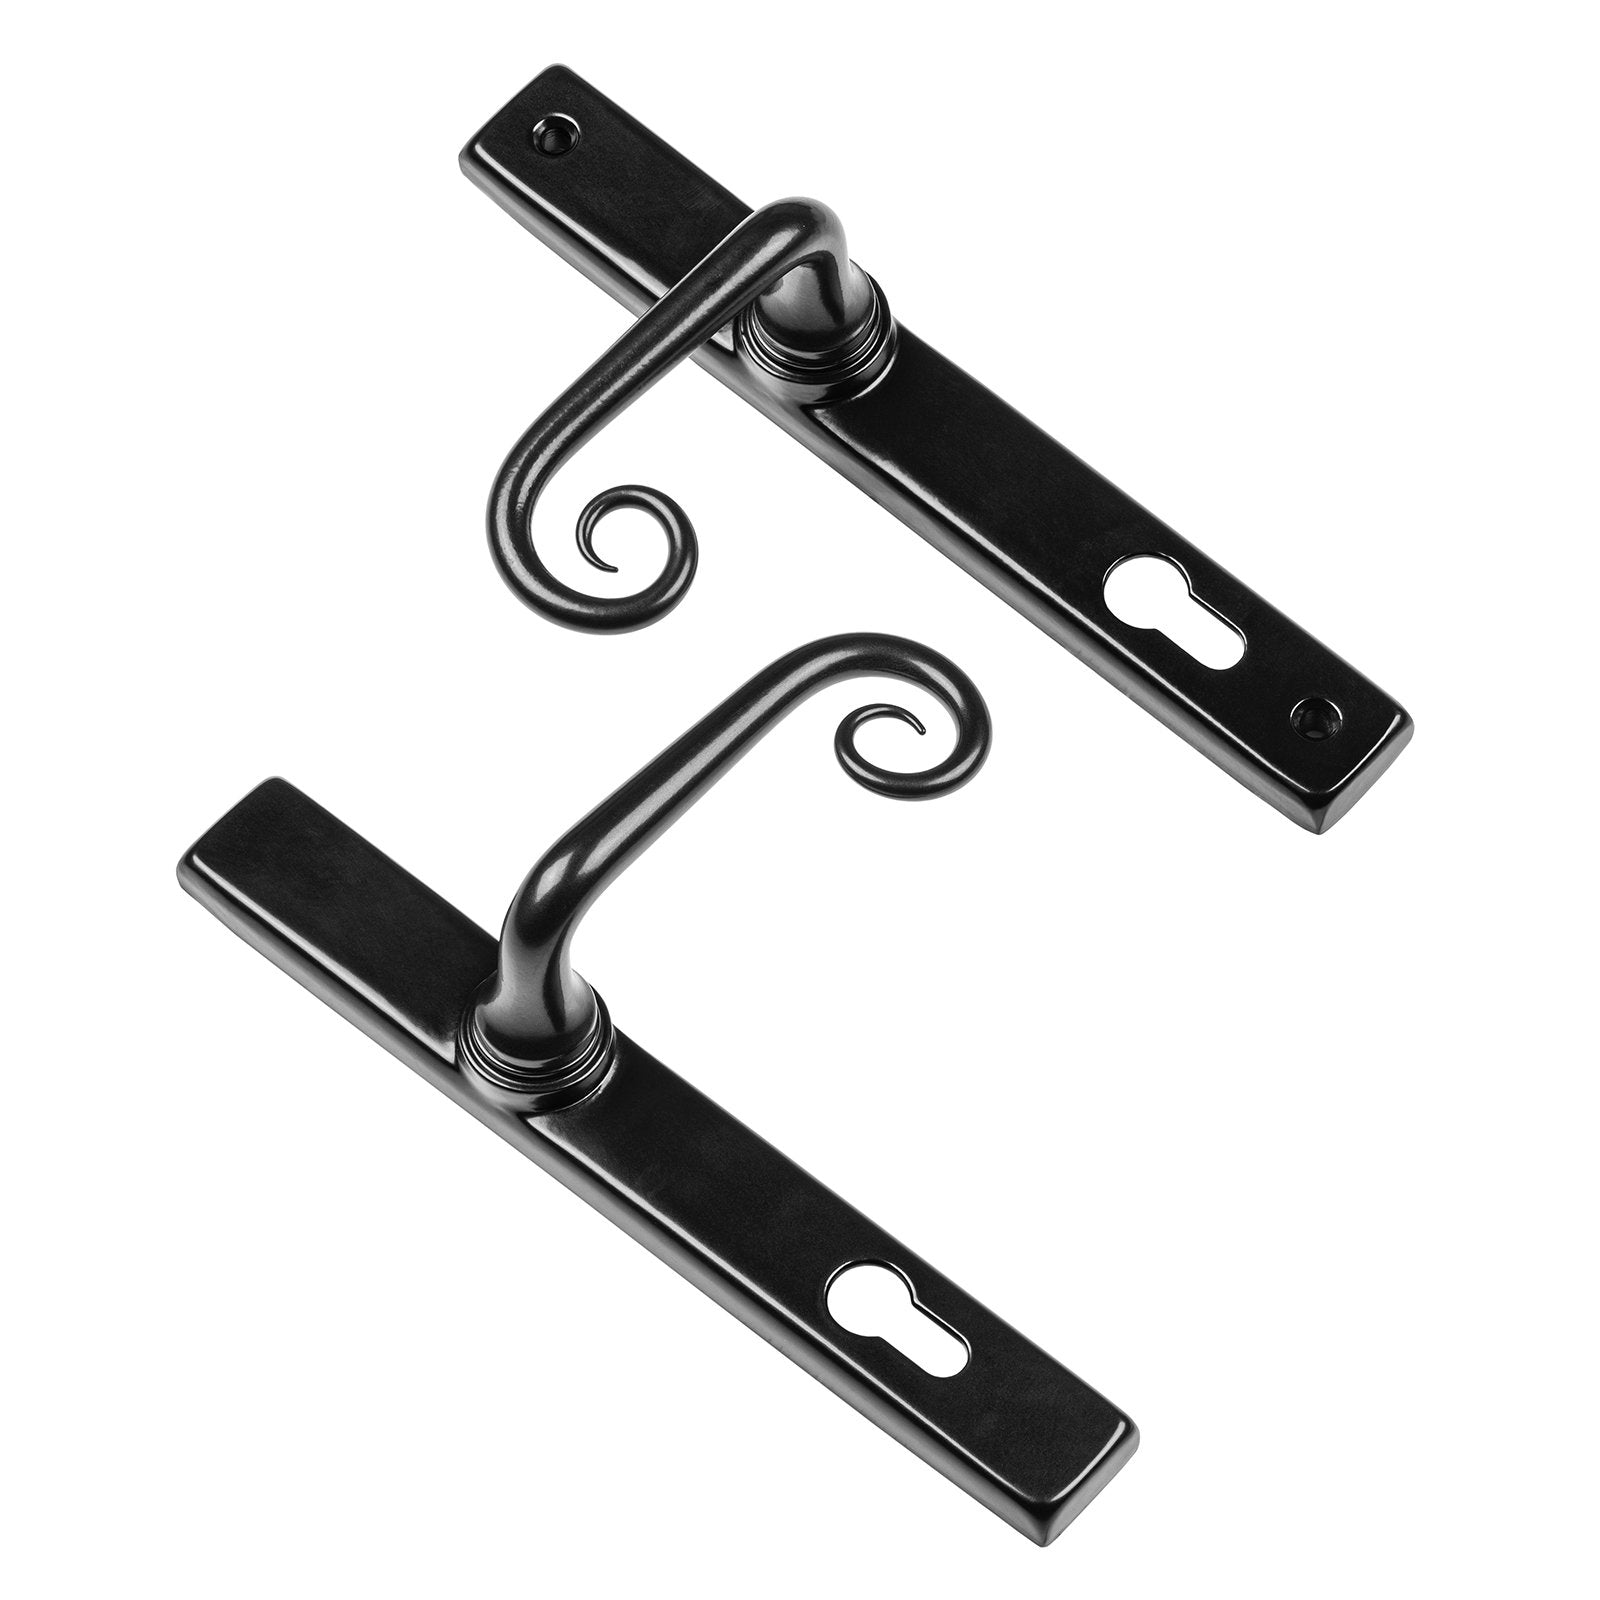 Curl multipoint sprung door handle SHOW